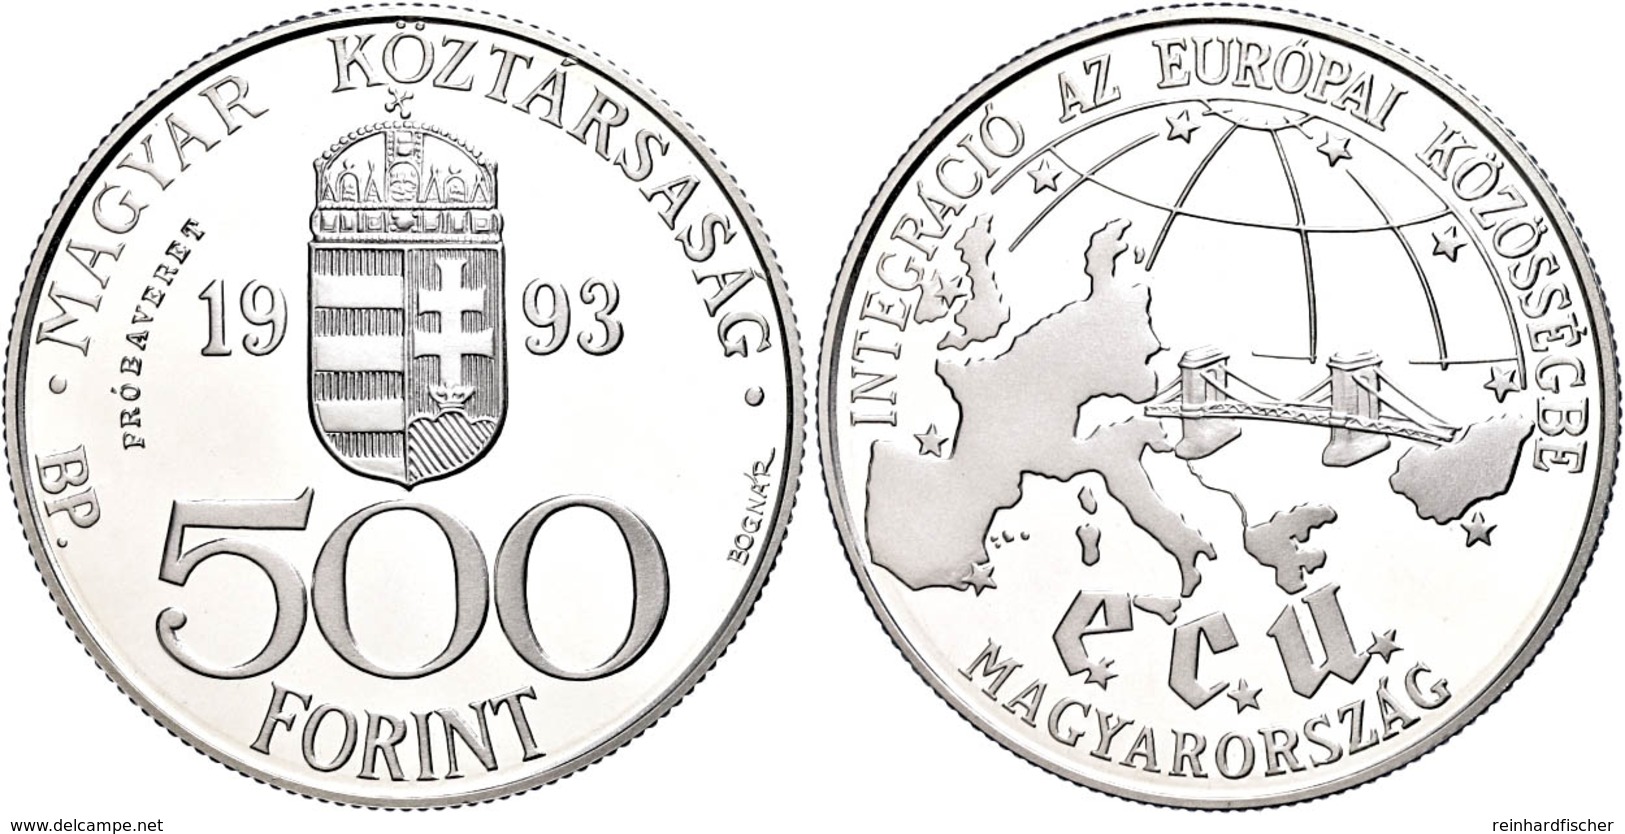 500 Forint, Silber, 1993, Probe, EU, Vgl. KM 704, In Kapsel, PP.  PP - Hungary